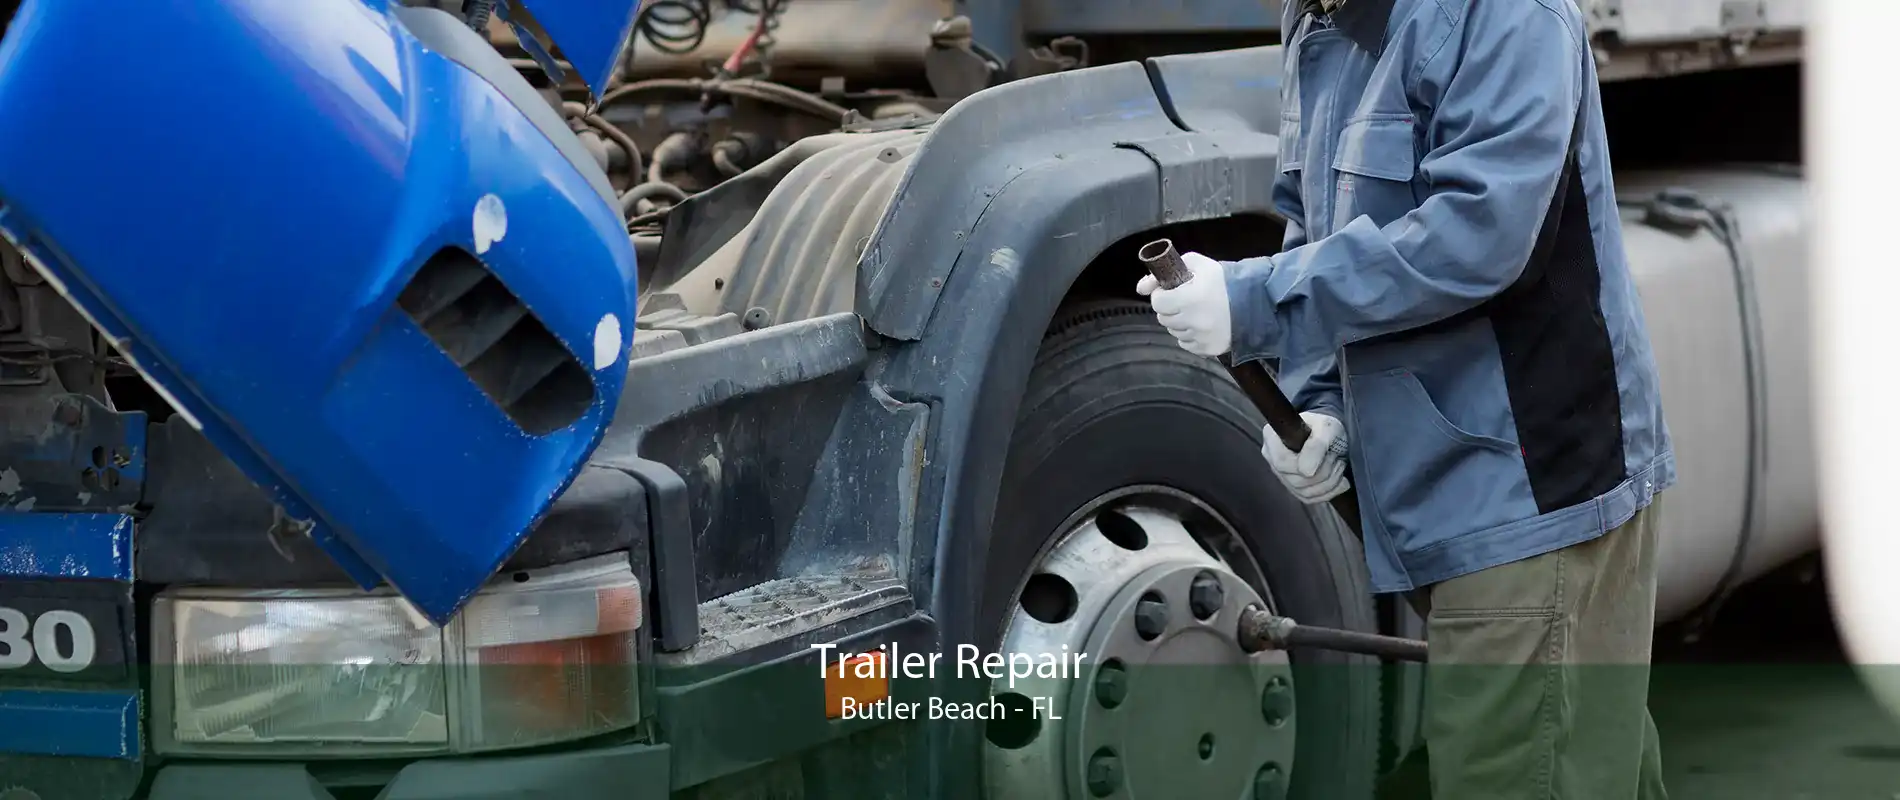 Trailer Repair Butler Beach - FL